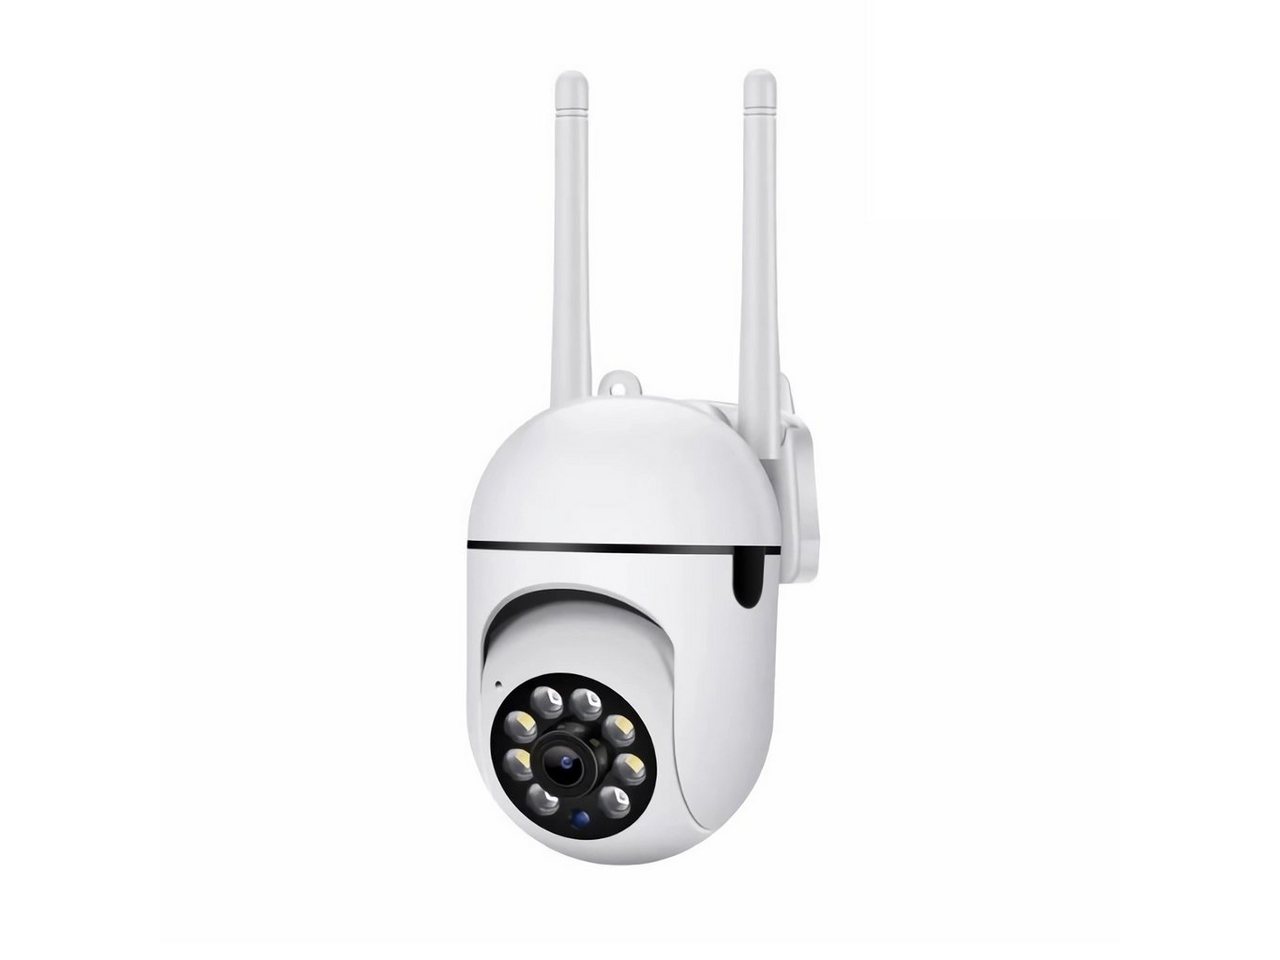 Bolwins B98D WIFI IP Überwachung Kamera Dual Band Wireless Nachtsicht Video Überwachungskamera von Bolwins